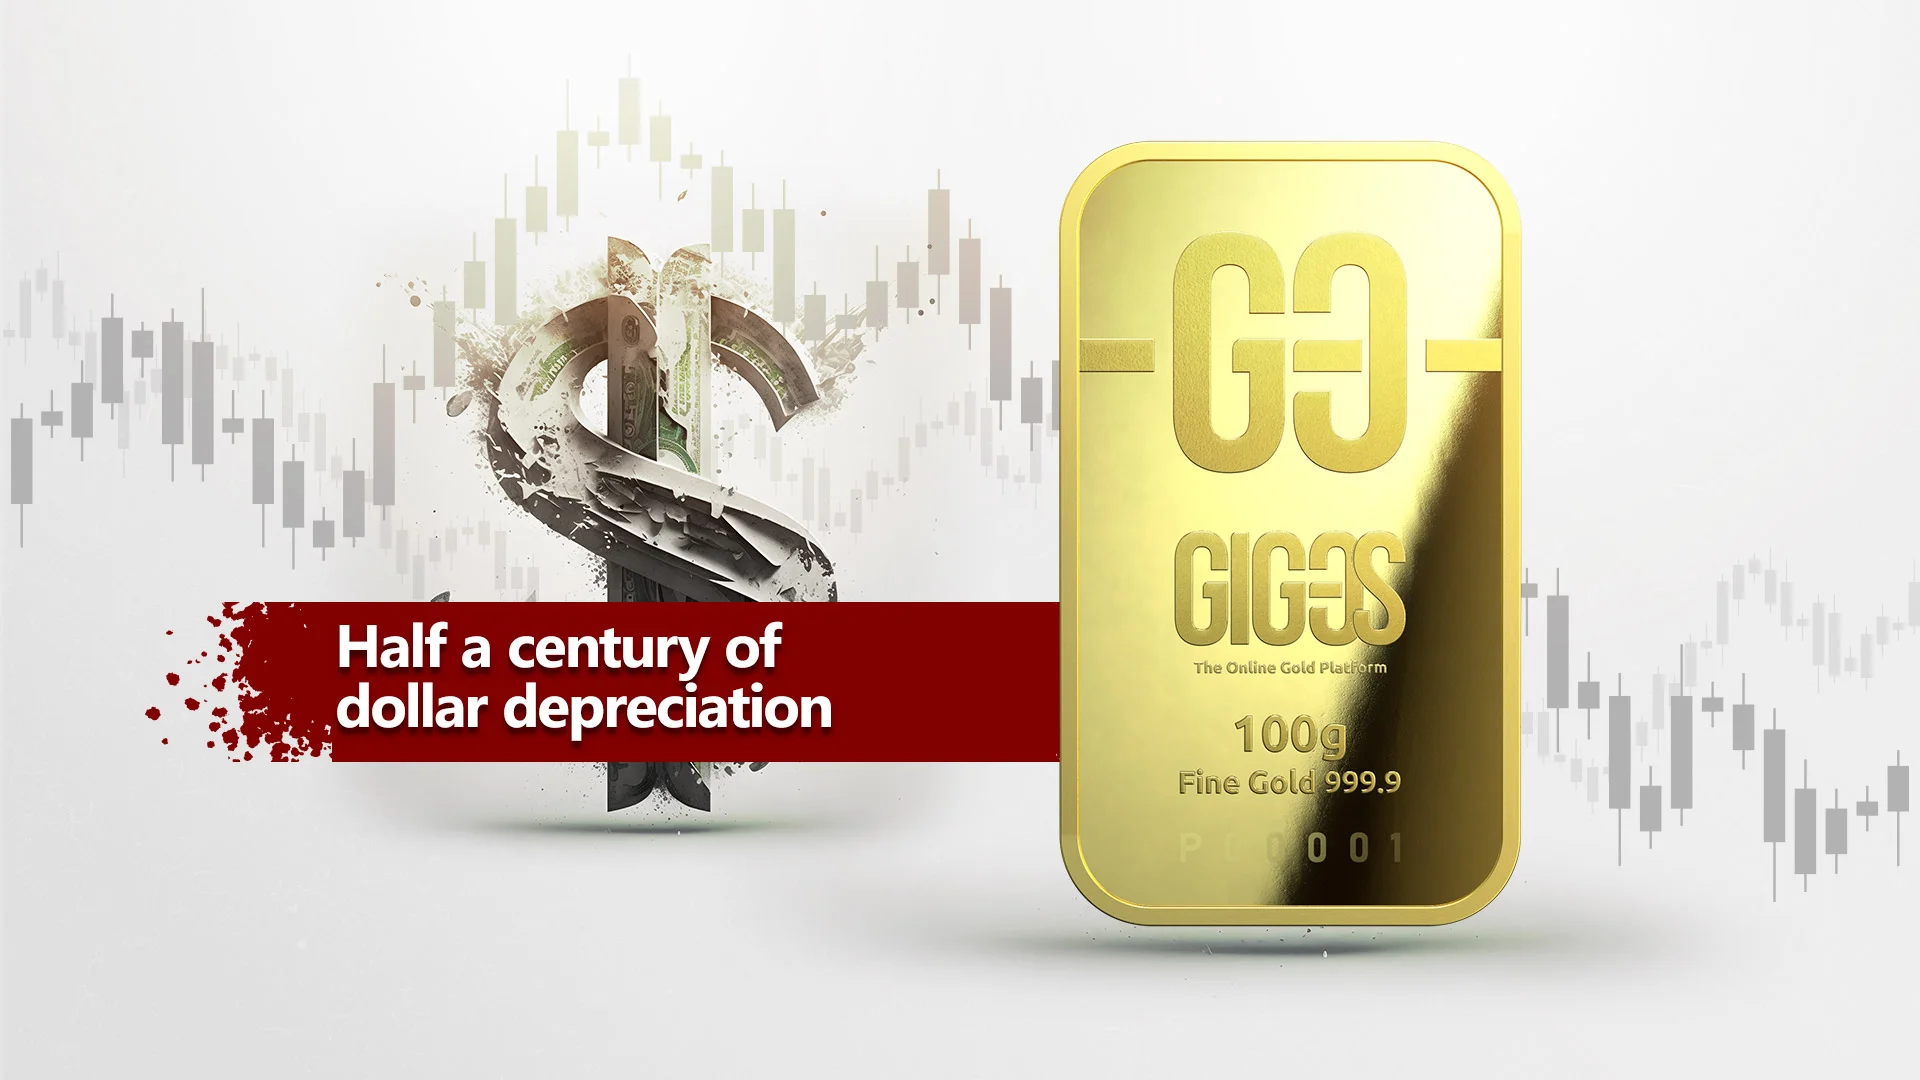 [VIDEO] Half a century of dollar depreciation

